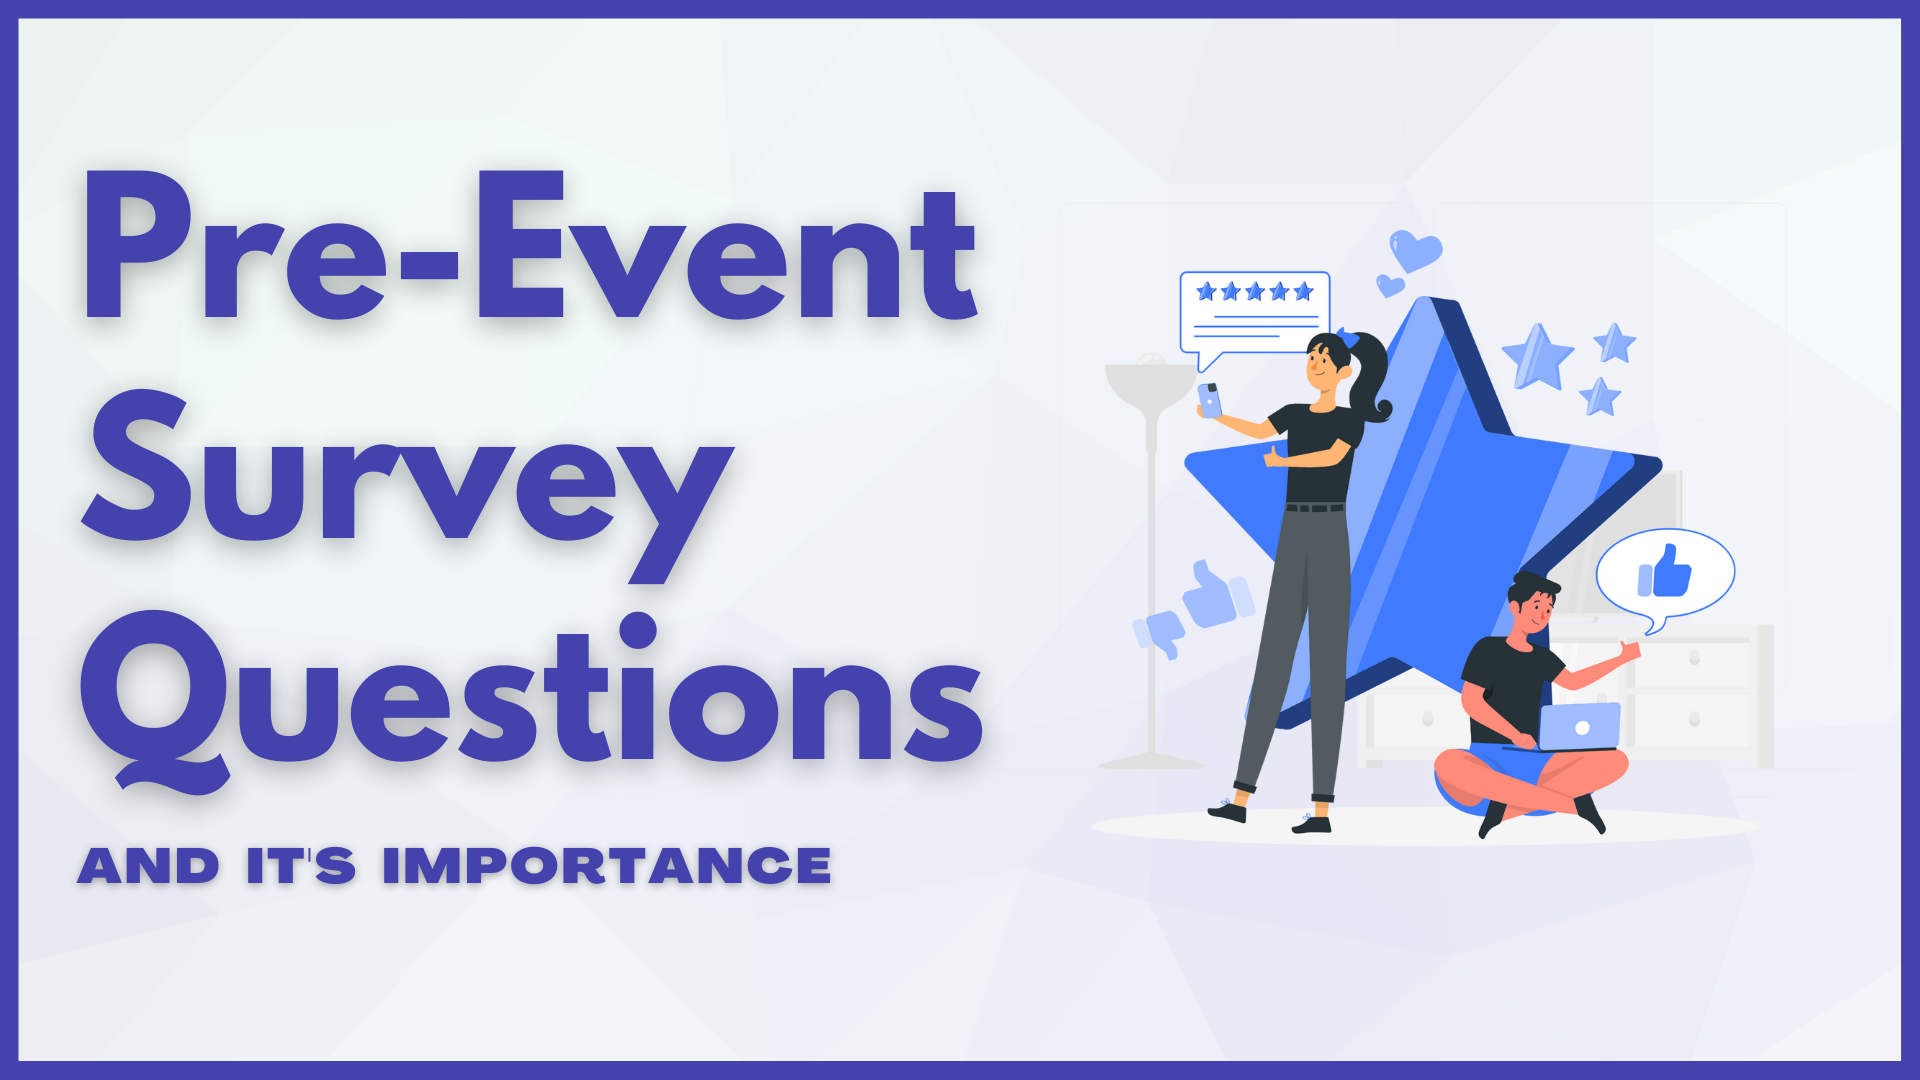 Event Survey